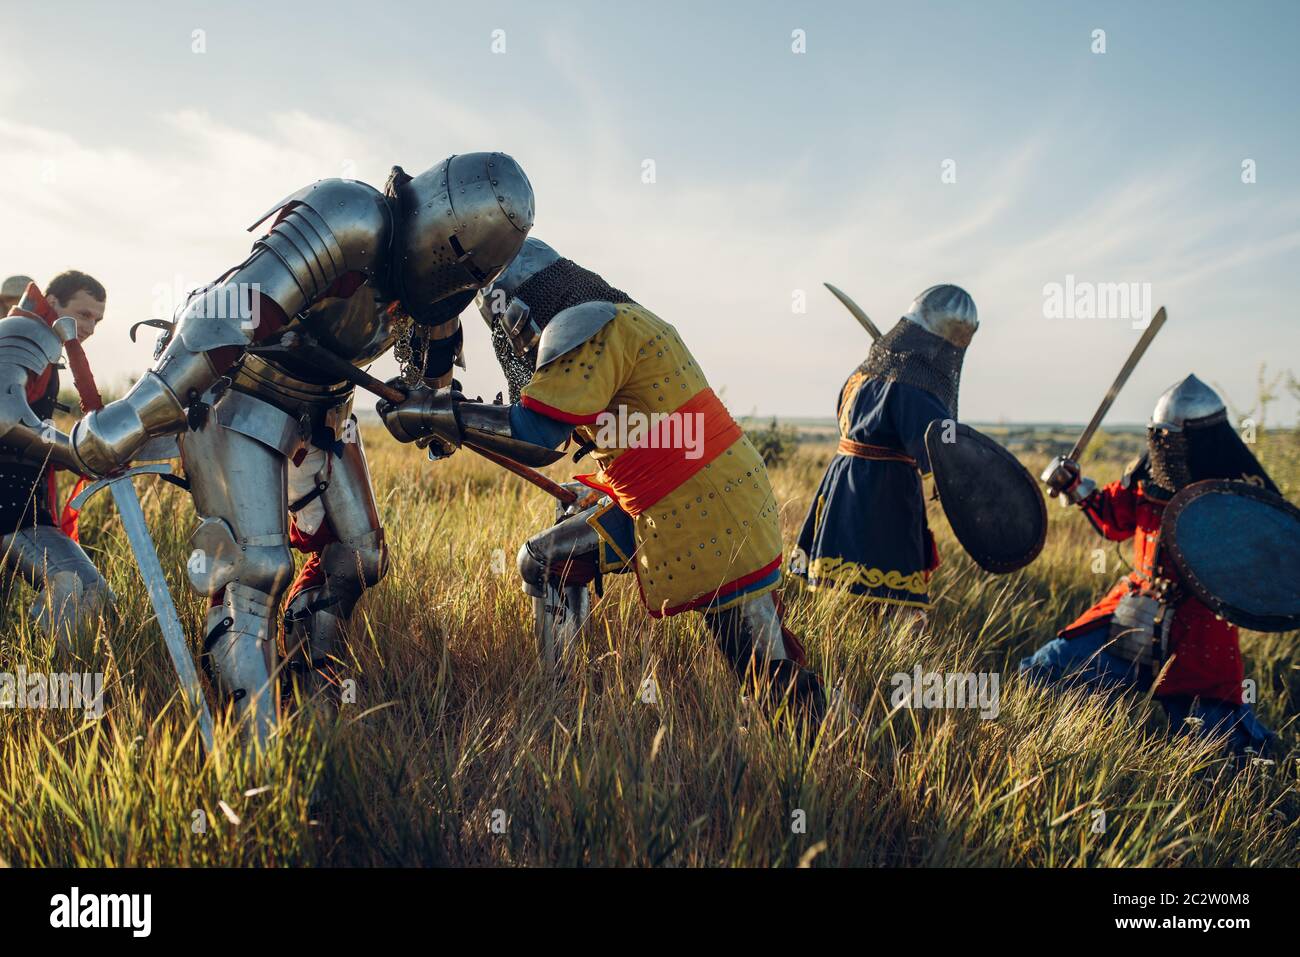 Mittelalterliche Ritter in Rüstung und Helme kämpfen mit Schwert und Axt, große Schlacht. Gepanzerte alte Krieger in Rüstung posiert auf dem Feld Stockfoto